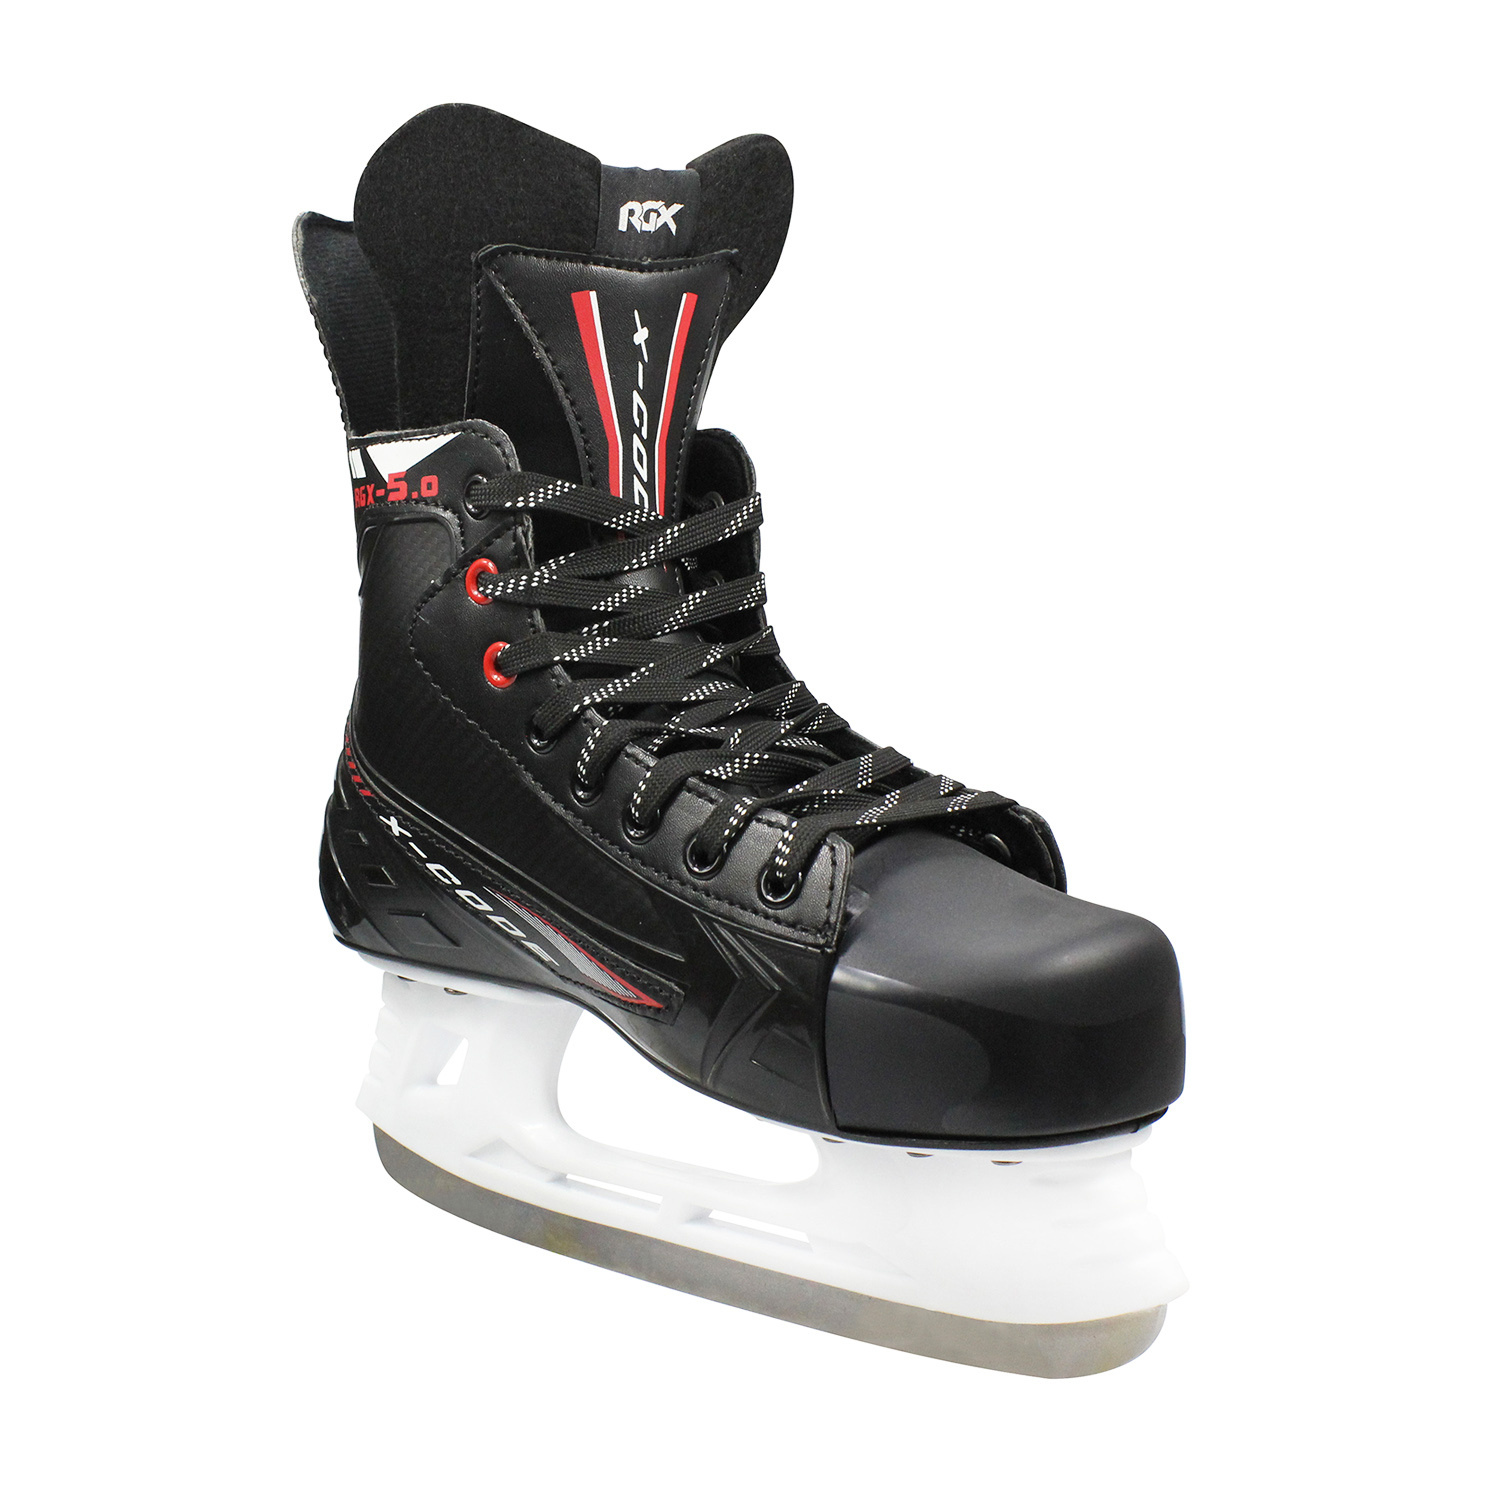 RGX-5.0 X-CODE Red хоккейные коньки